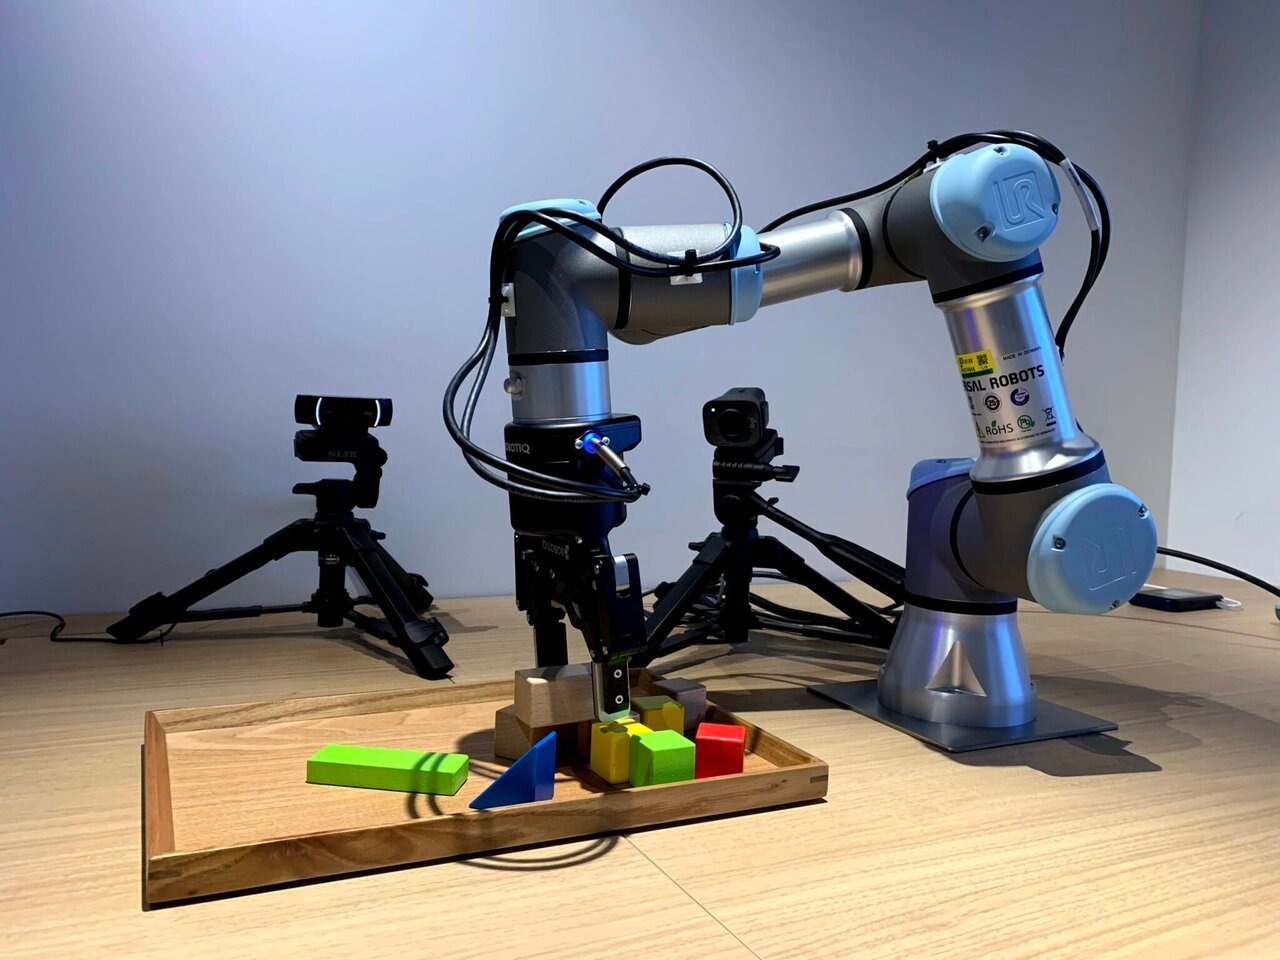 アスラテック、クラウド型のロボット制御プラットフォーム「Asratec Cloud Robot System」を発表